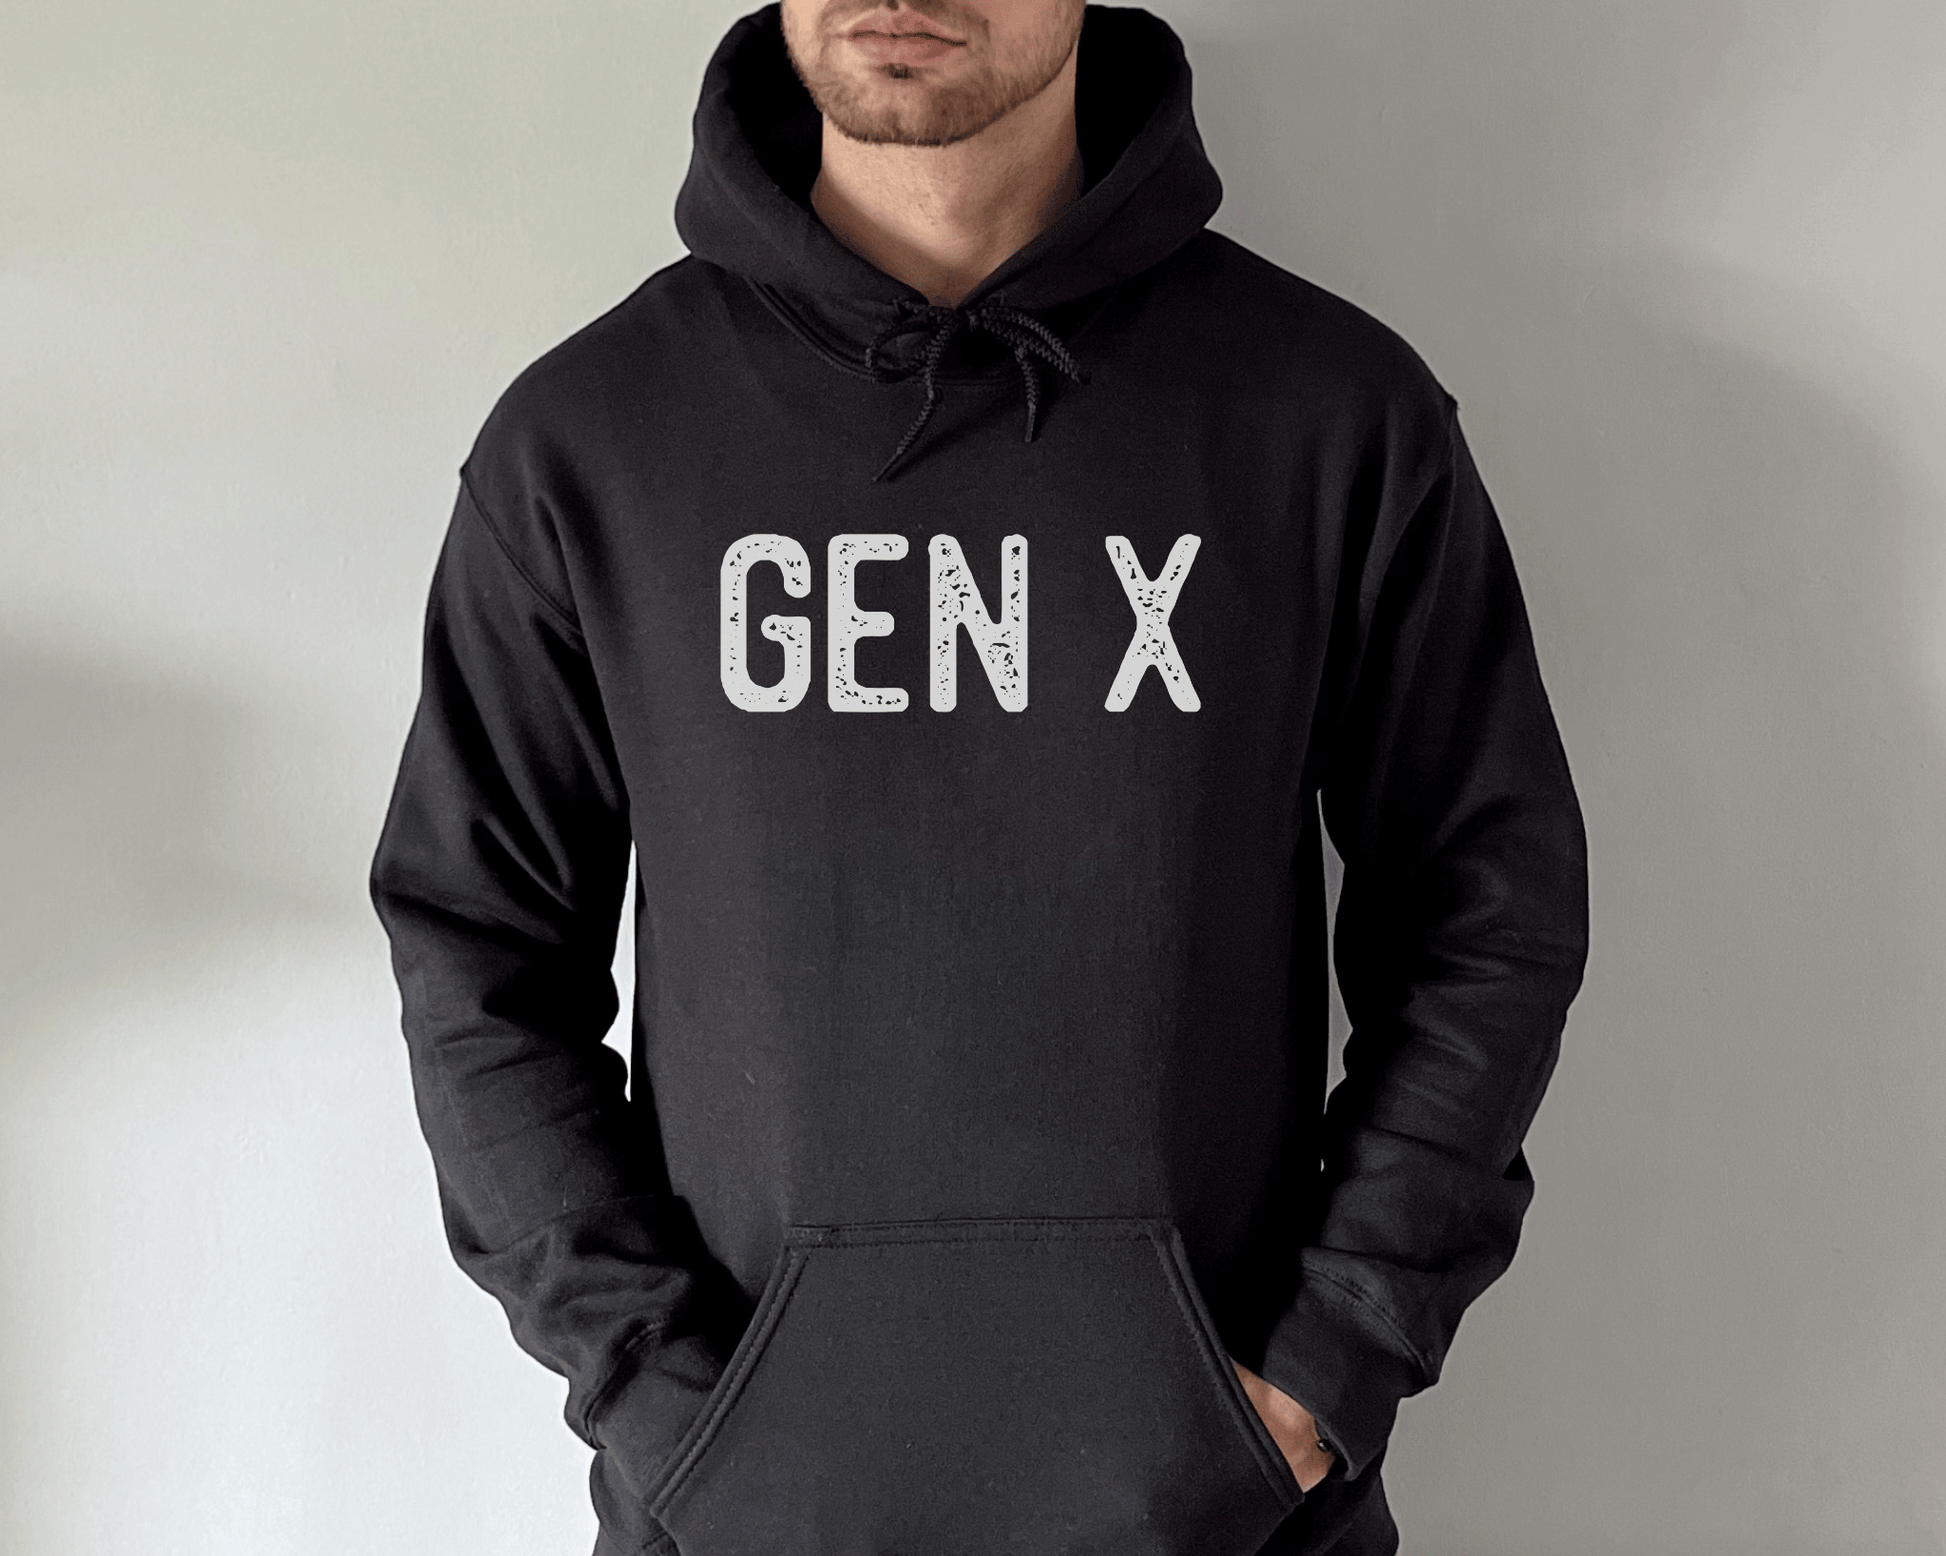 Gen X Hoodie in Black